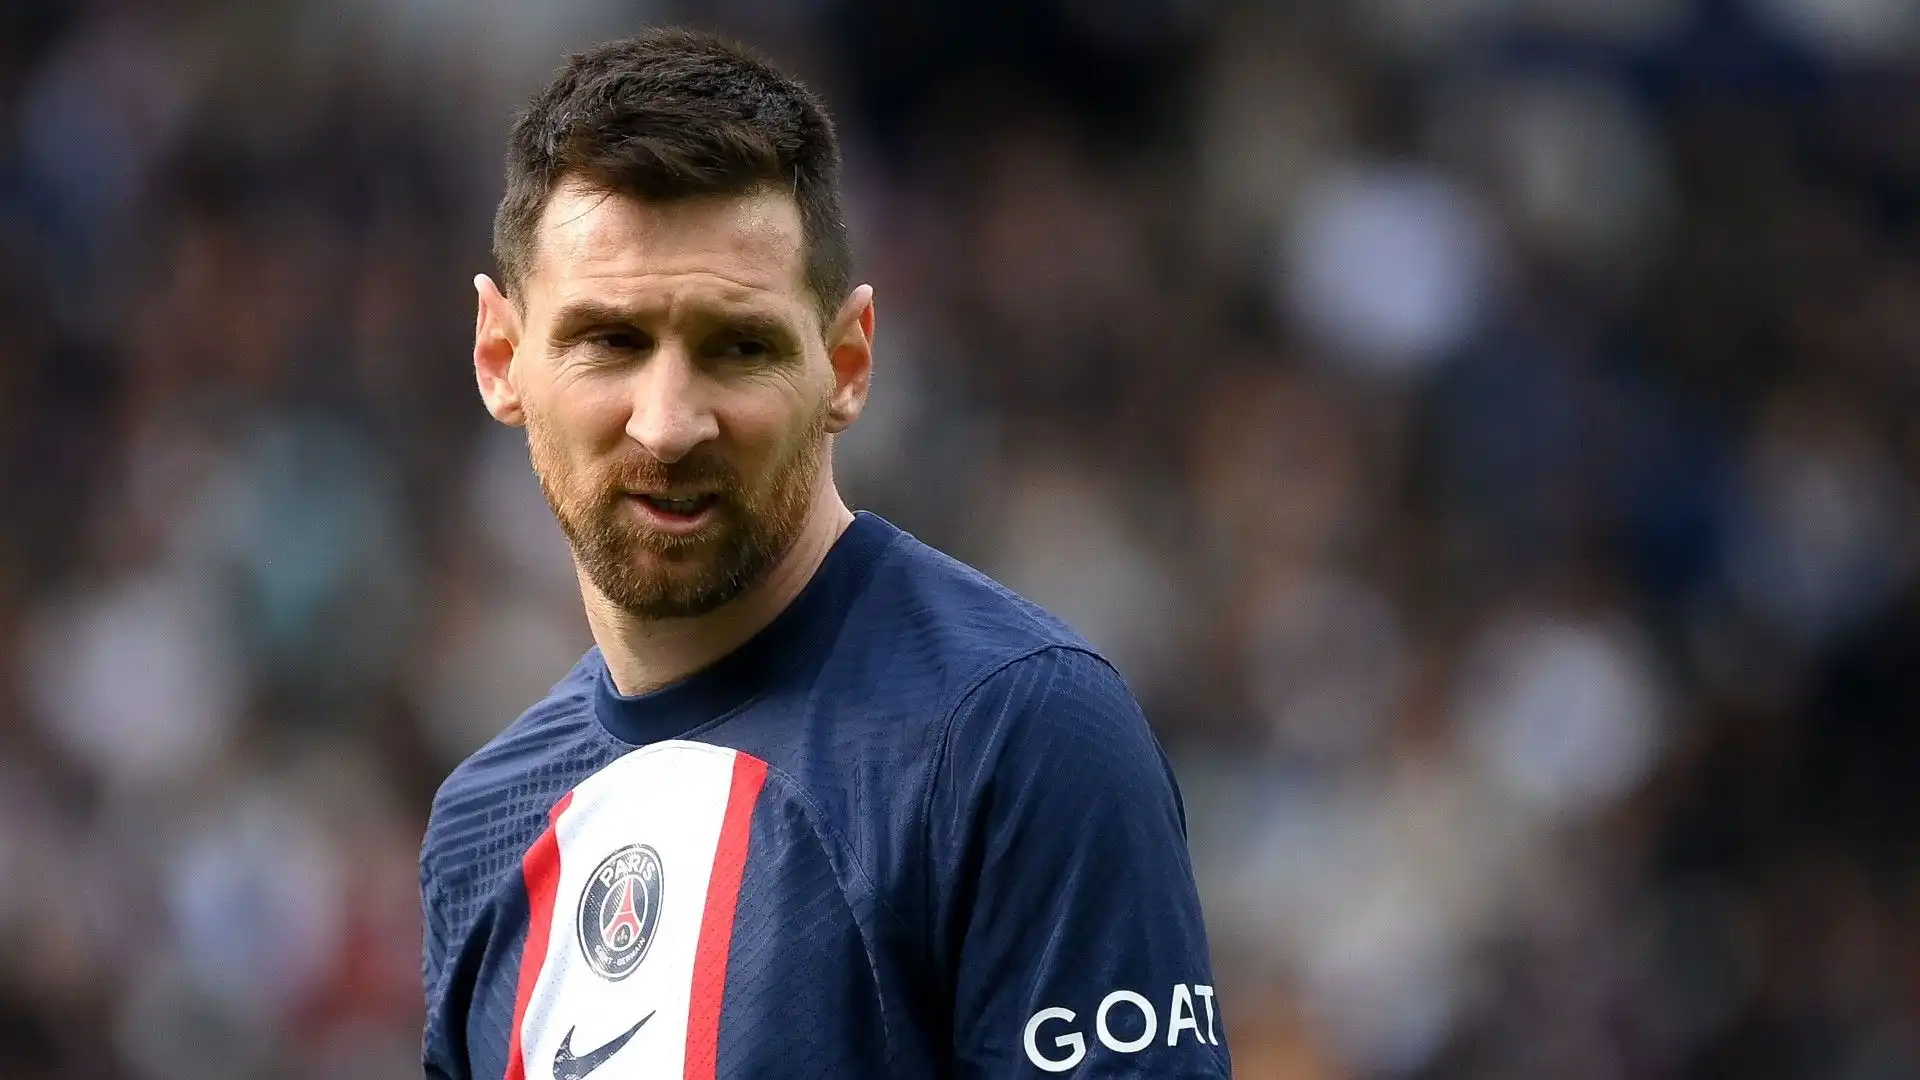 Quello che sembra sicuro è che Messi l'anno prossimo non giocherà con la maglia del Paris Saint Germain